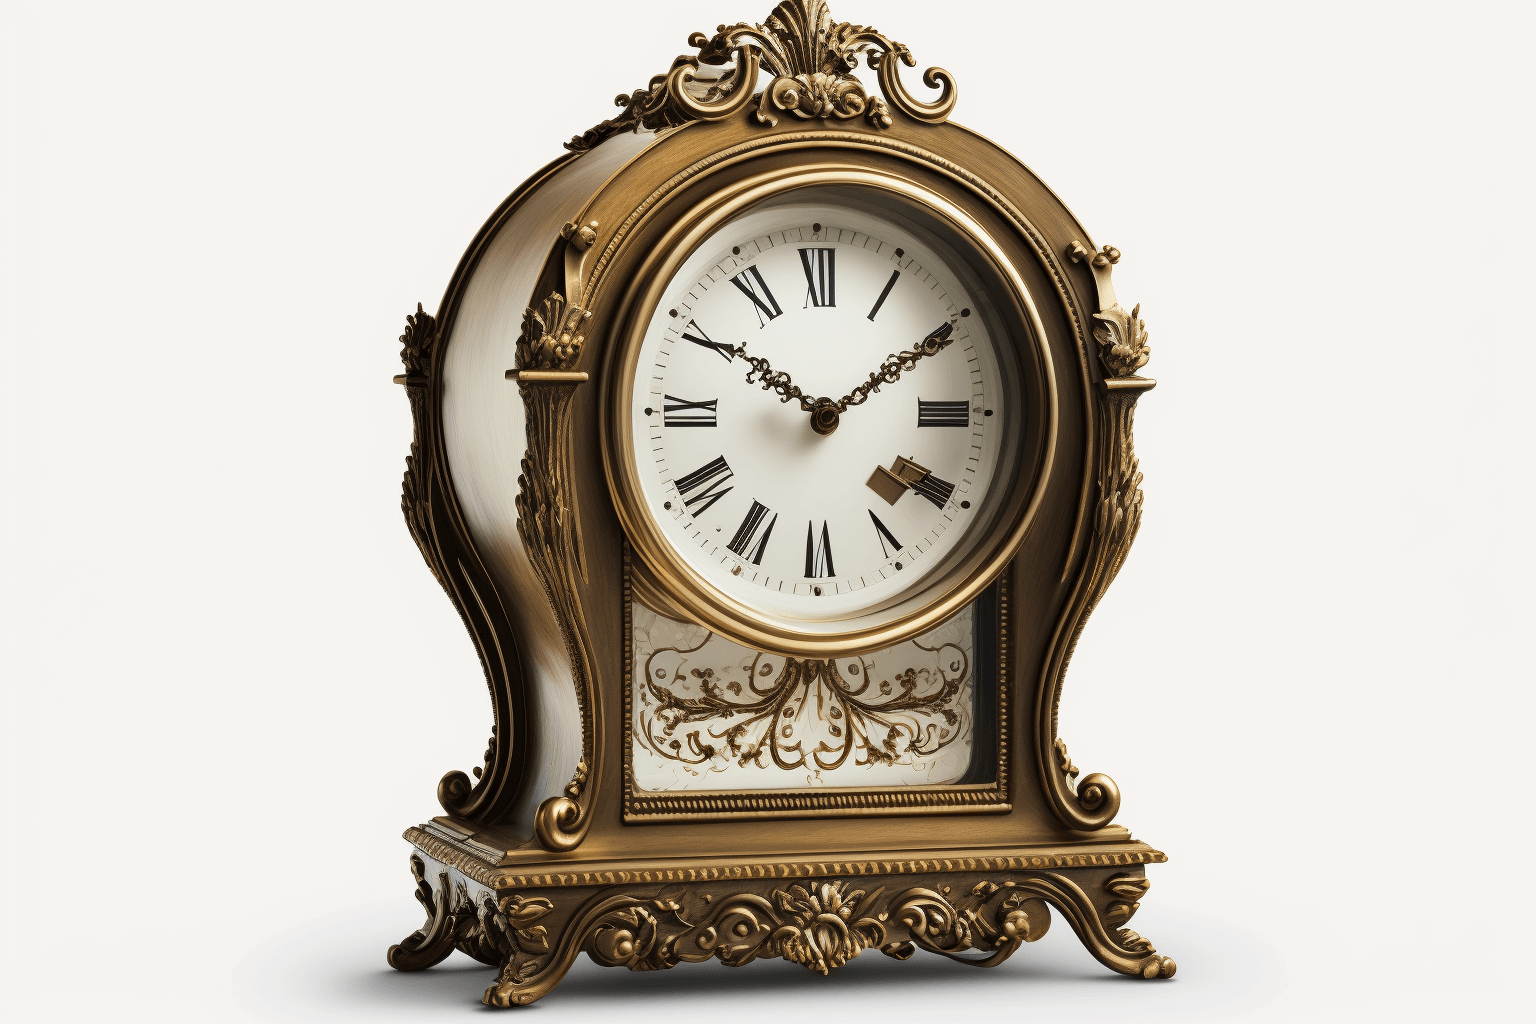 An antique clock standing